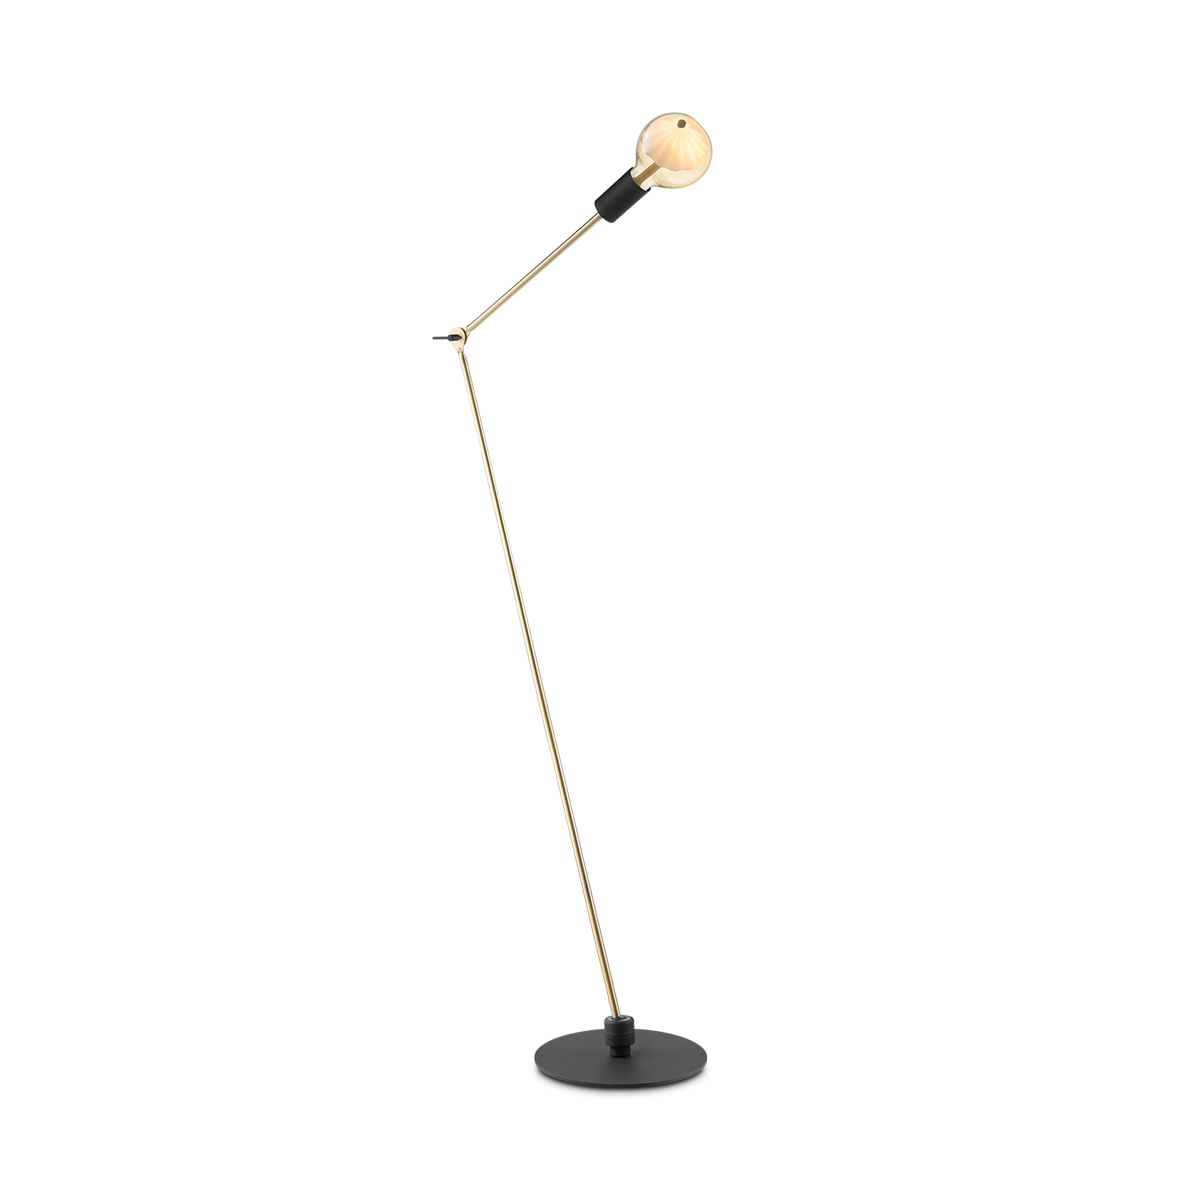 Tangla lighting - TLF7046-01BS - LED Floor lamp 1 Light - metal - sand black + brass - move me revolve - E27